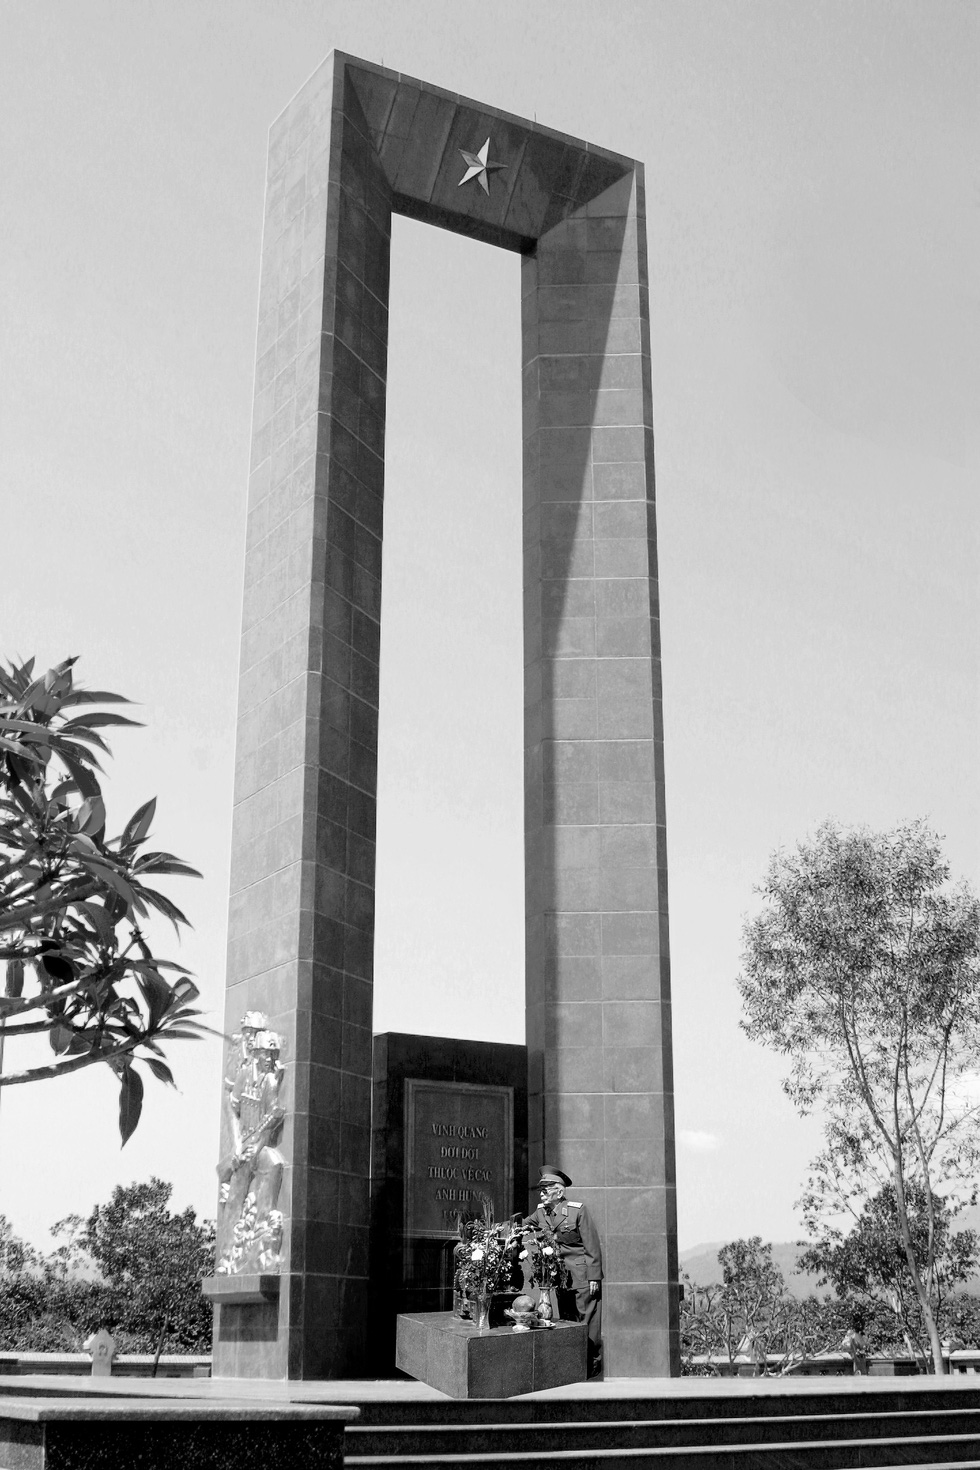 Đại tướng Võ Nguyên Giáp tại đài tưởng niệm liệt sĩ trên đồi Độc Lập Điện Biên Phủ ngày 20-4-2004 - Ảnh: NGUYỄN ĐÌNH TOÁN